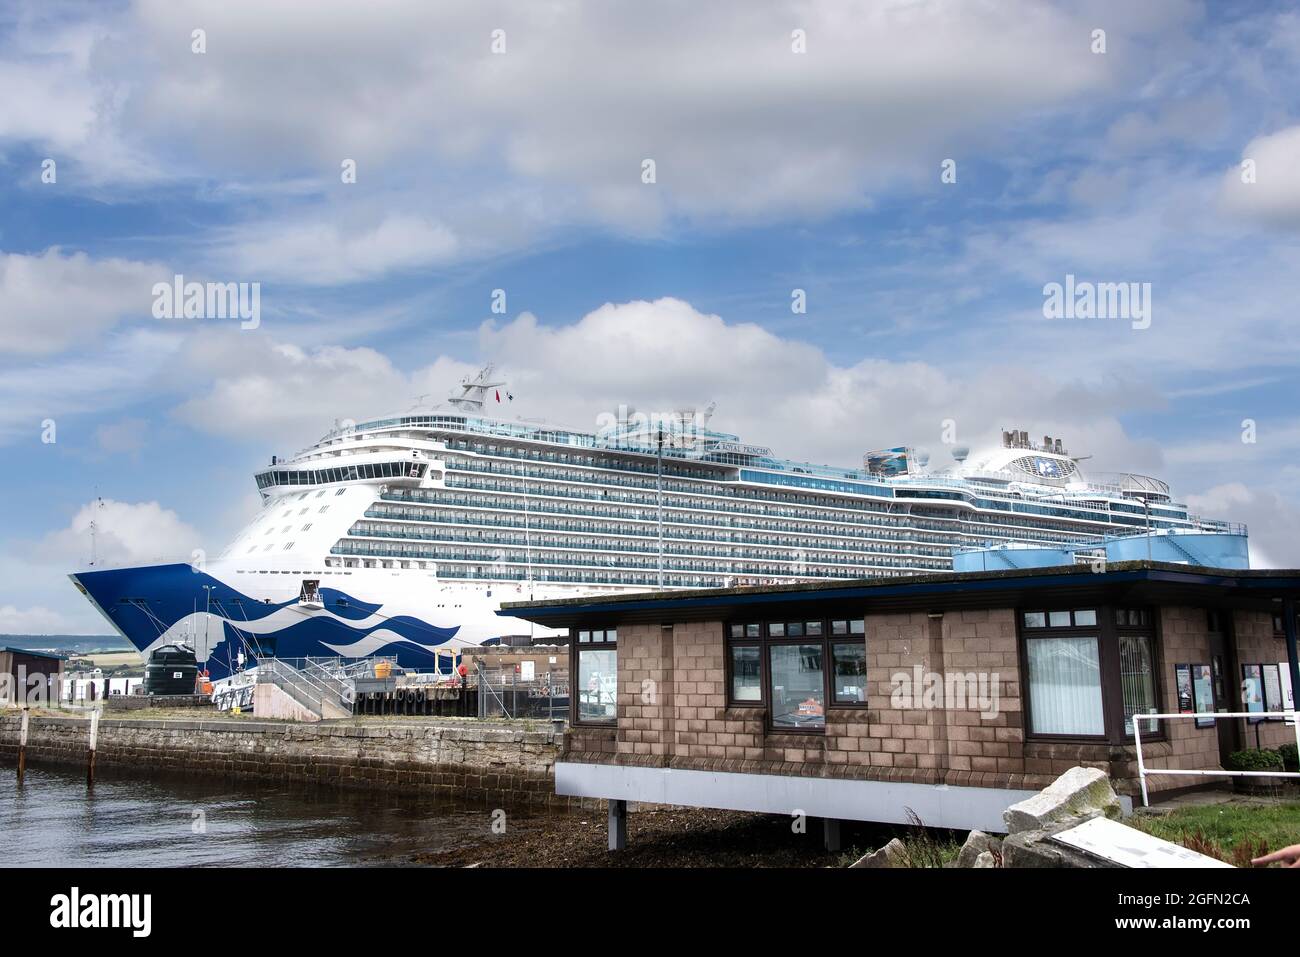 Cromarty Firth Port Authority, Invergordon, Regno Unito - 13 agosto 2018: Princess Cruise Lines, la Principessa reale, ancorata a Invergordon Foto Stock